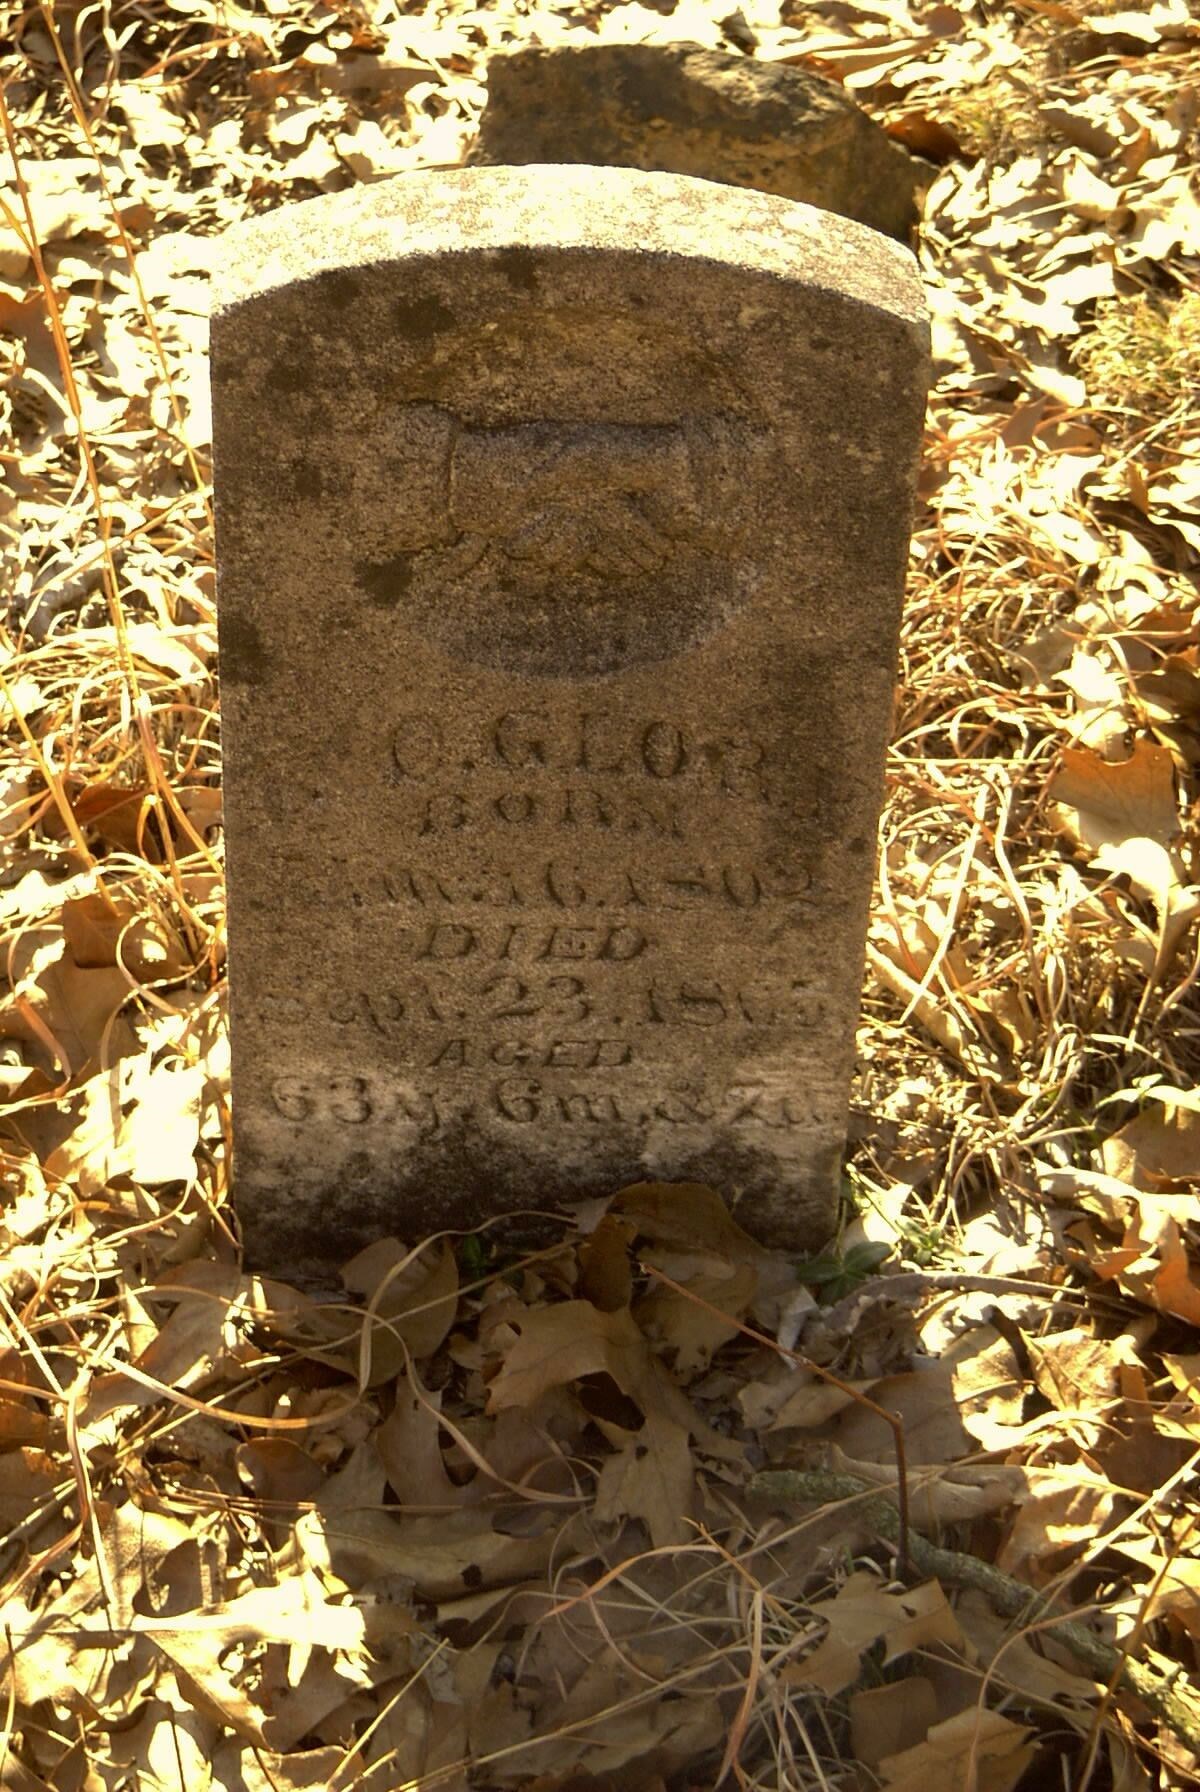 Grave-GLORE Morton C